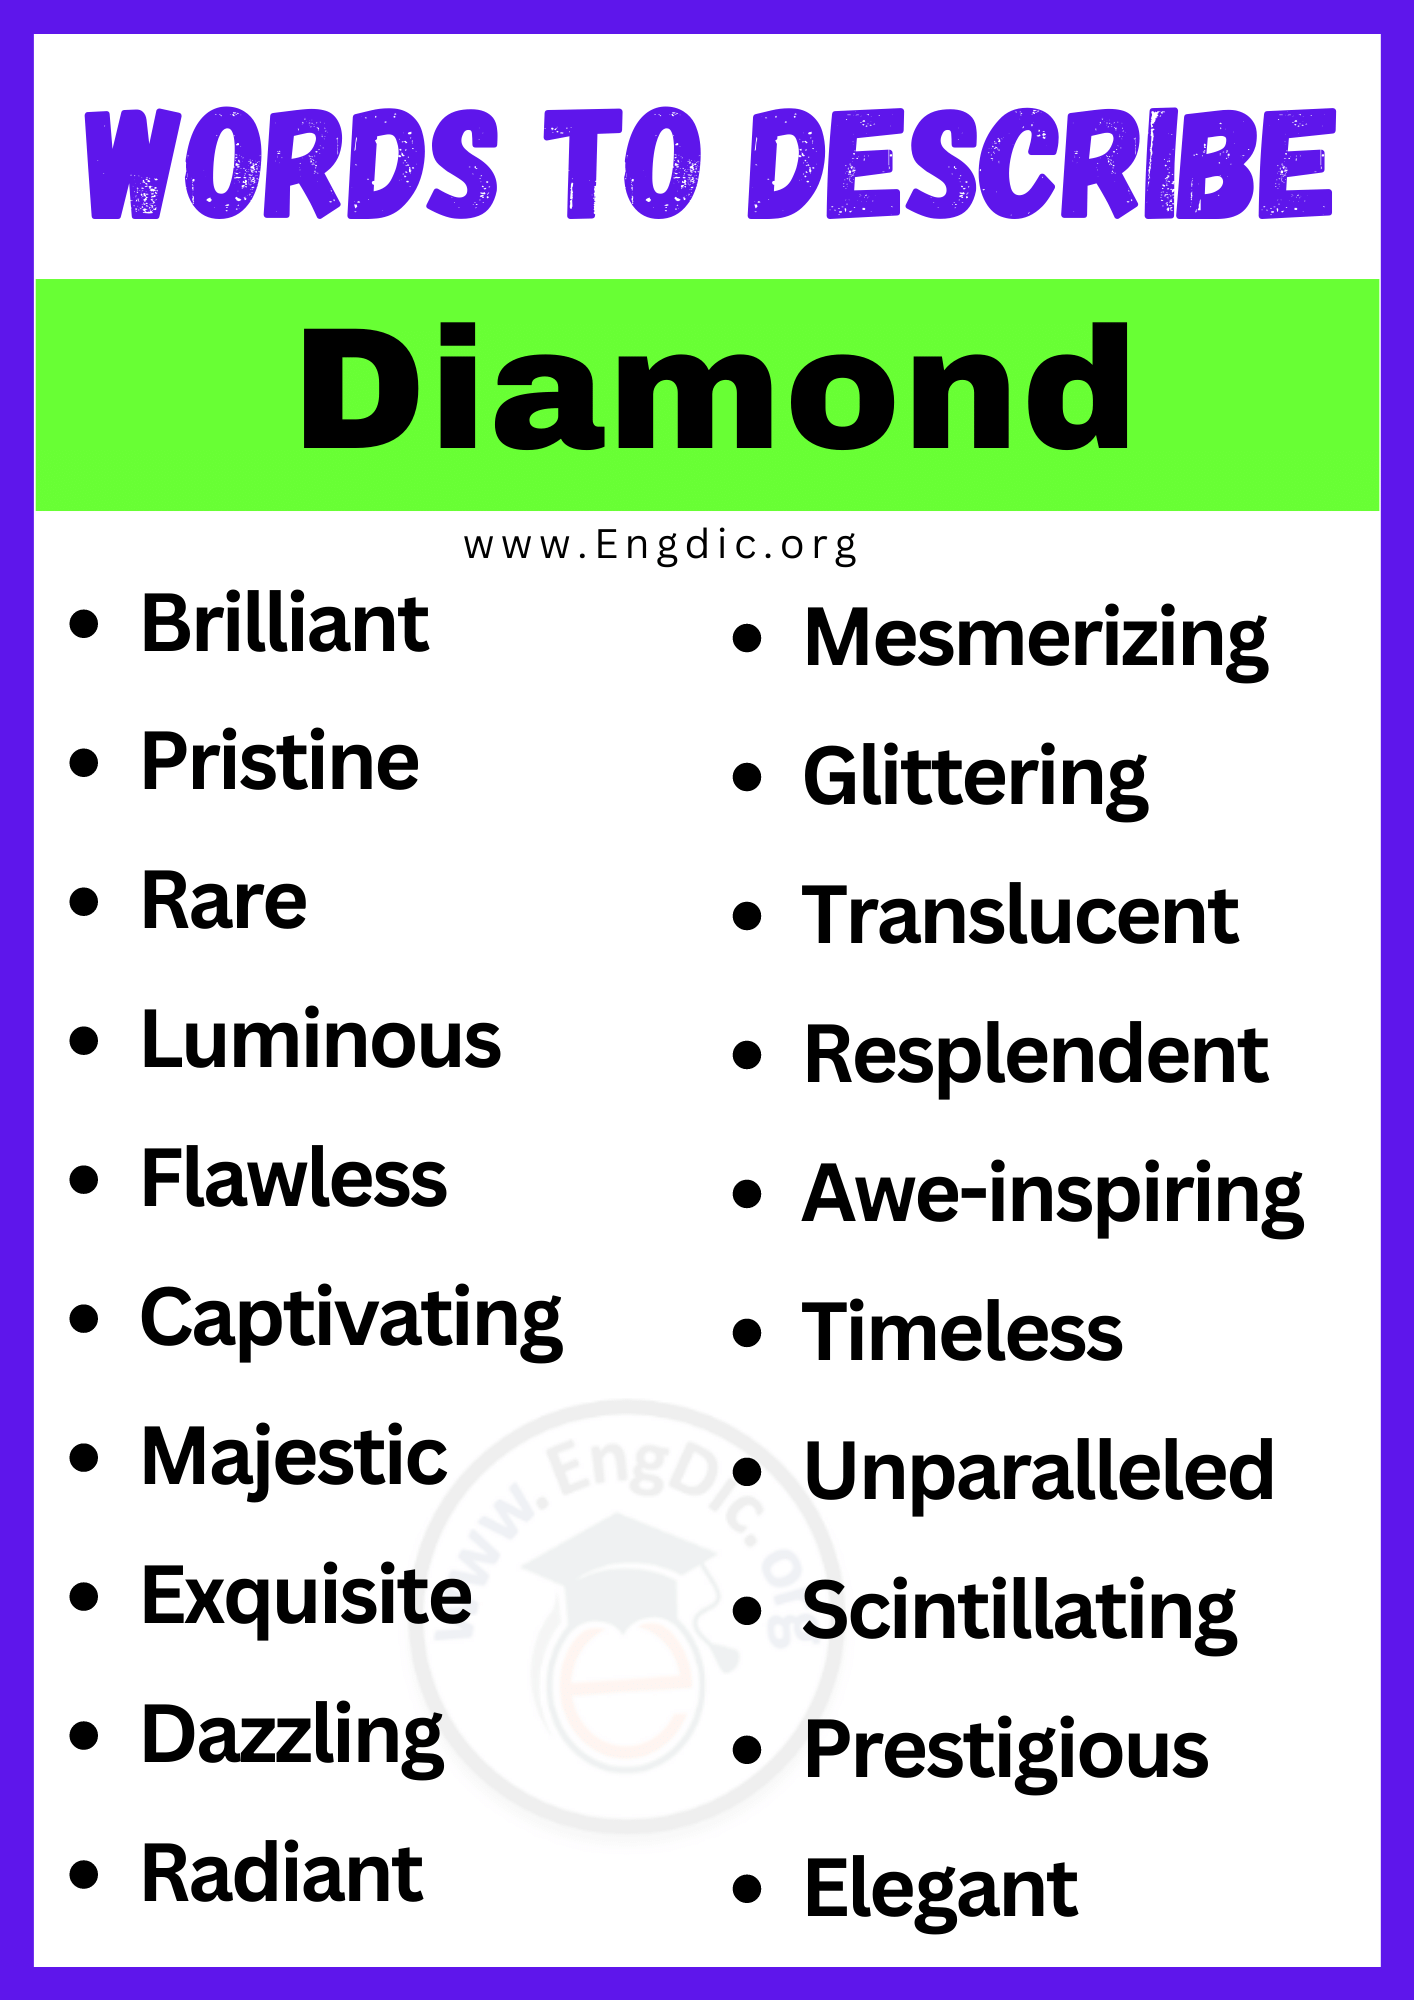 Words to Describe Diamond